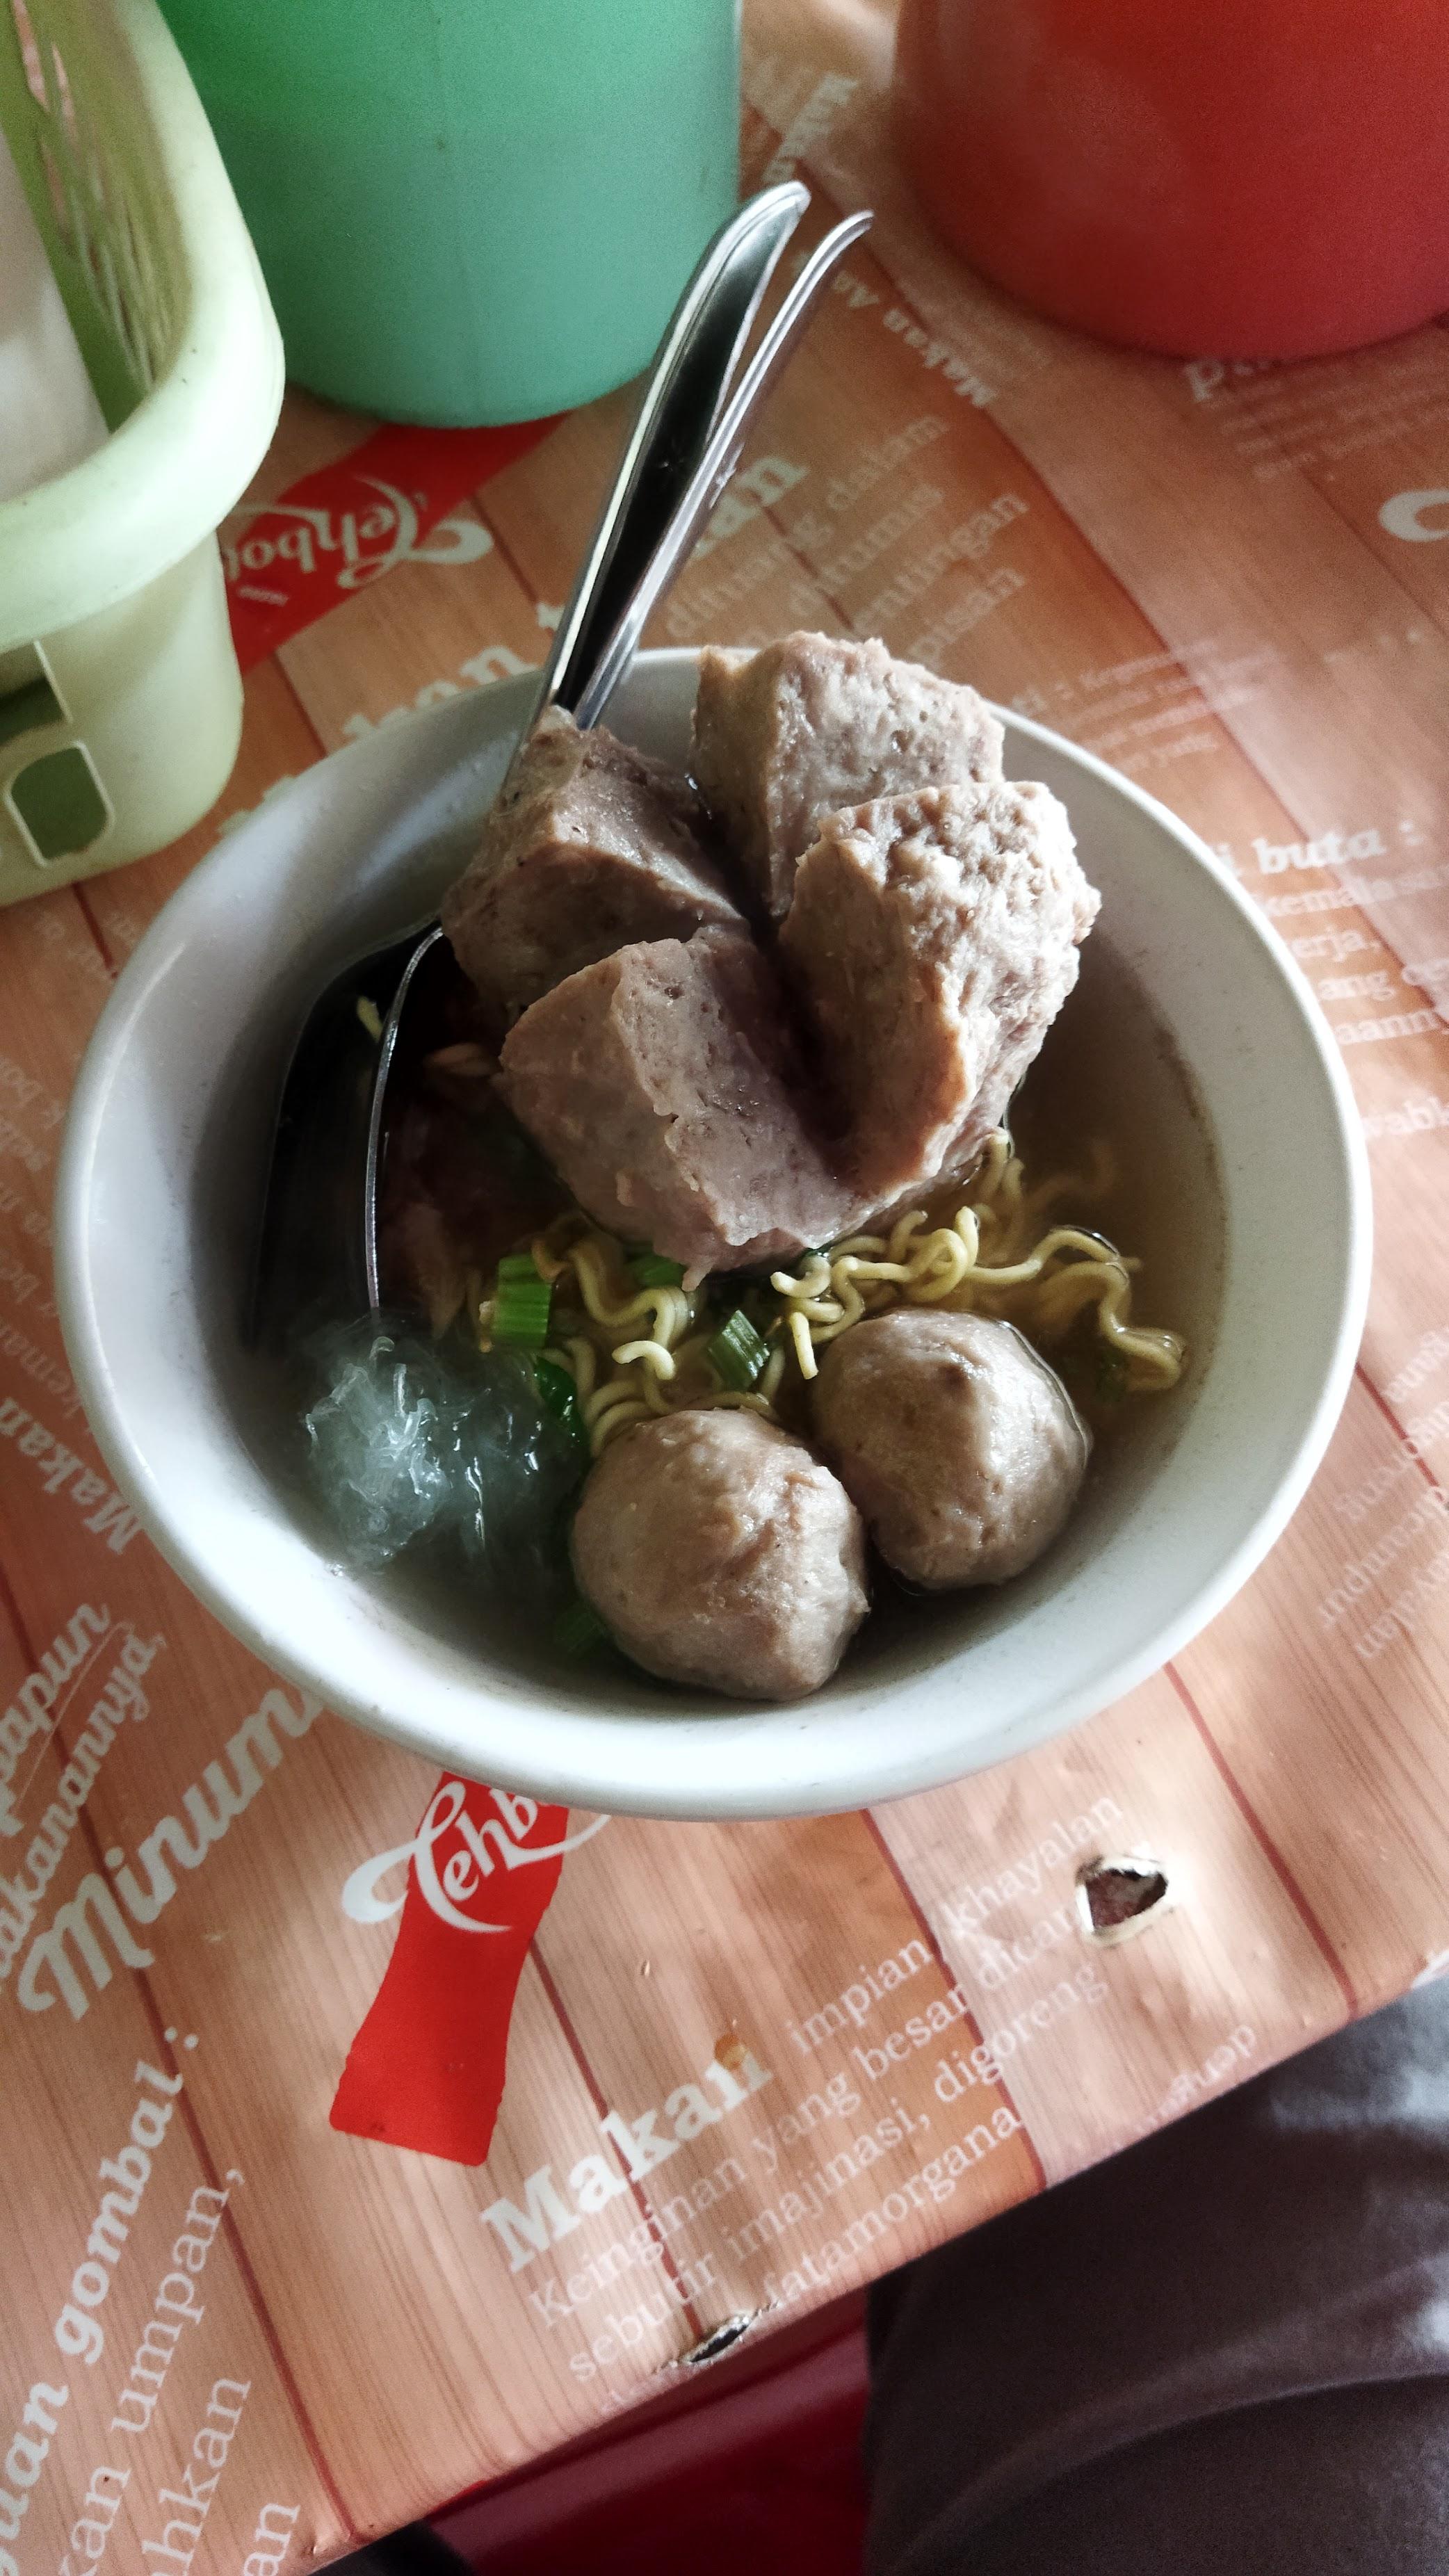 Warung Mie Ayam Bakso Waru Doyong Mbah Suro review